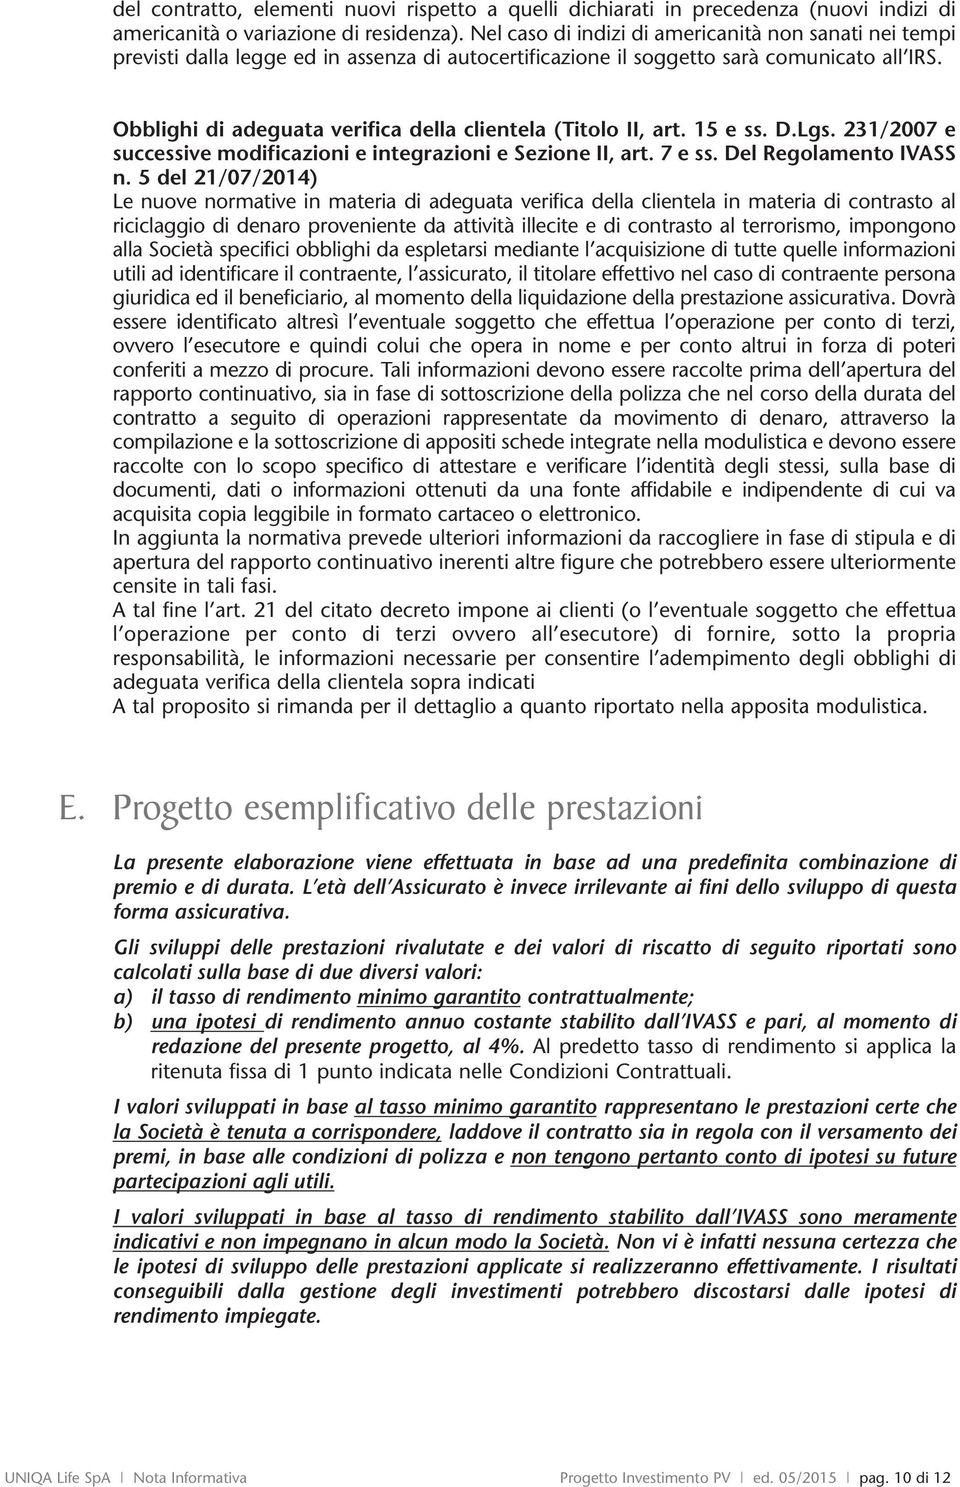 15 e ss. D.Lgs. 231/2007 e successive moficazioni e integrazioni e Sezione II, art. 7 e ss. Del Regolamento IVASS n.